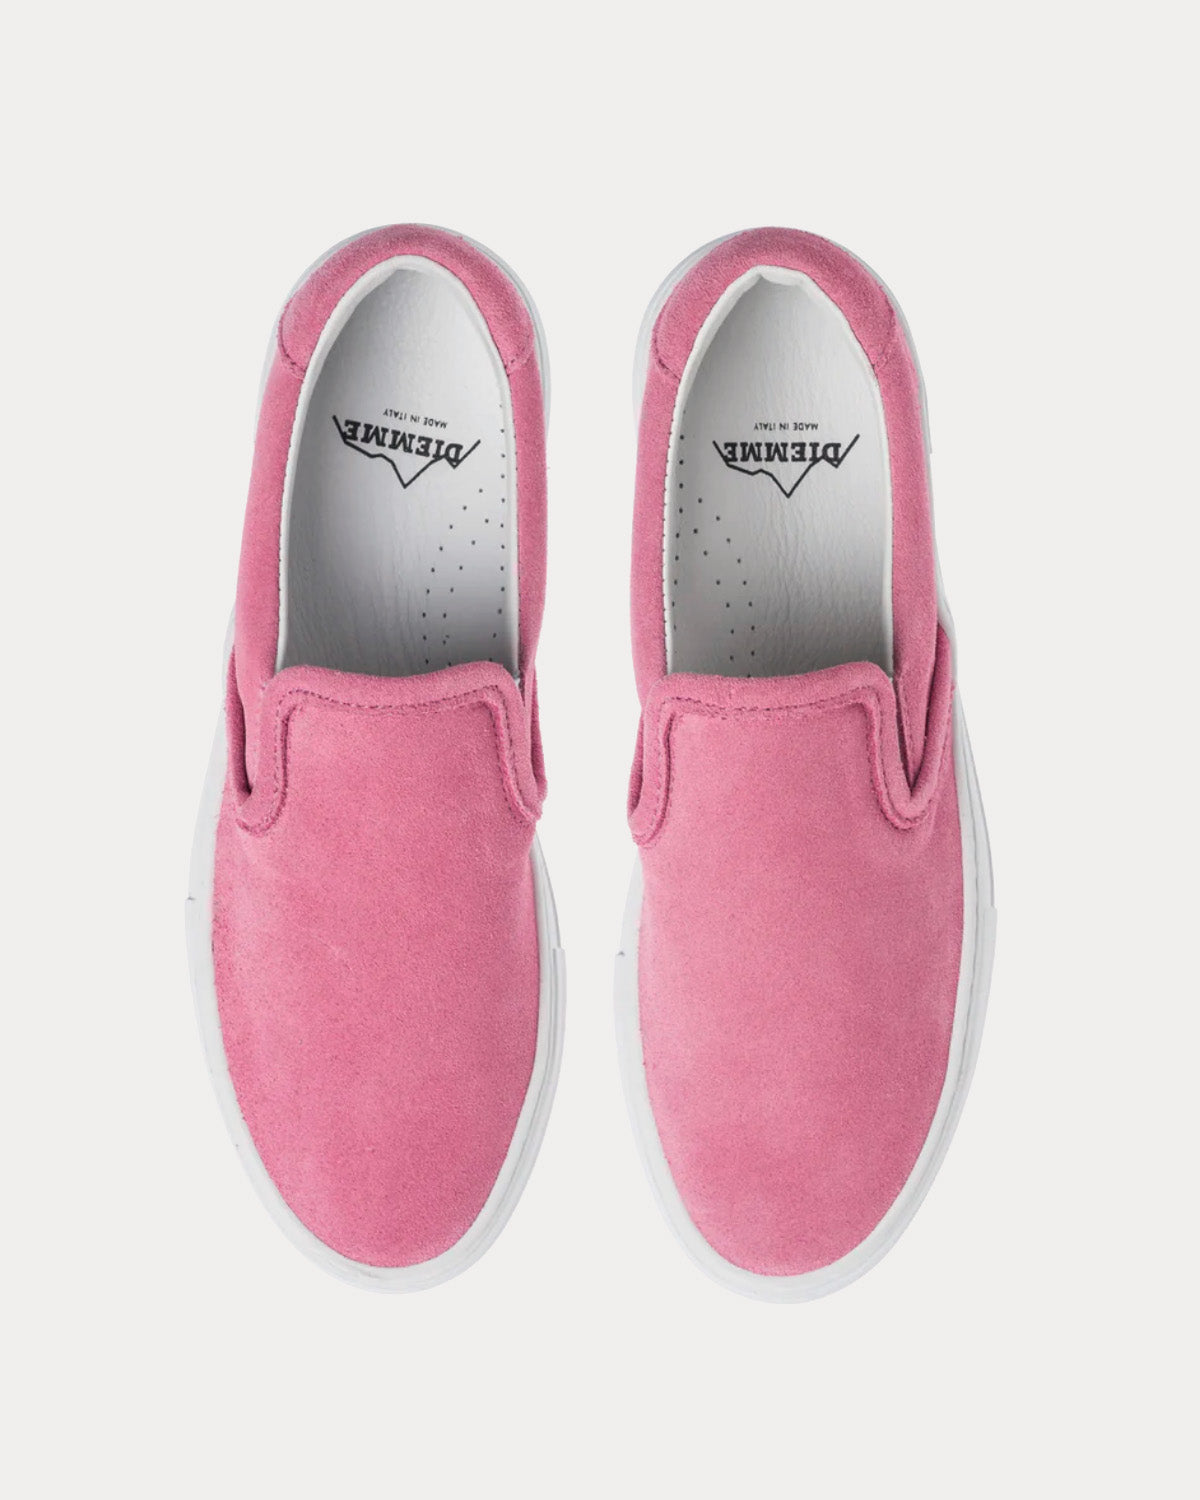 Diemme - Garda Suede Platform Pink Sea Slip On Sneakers